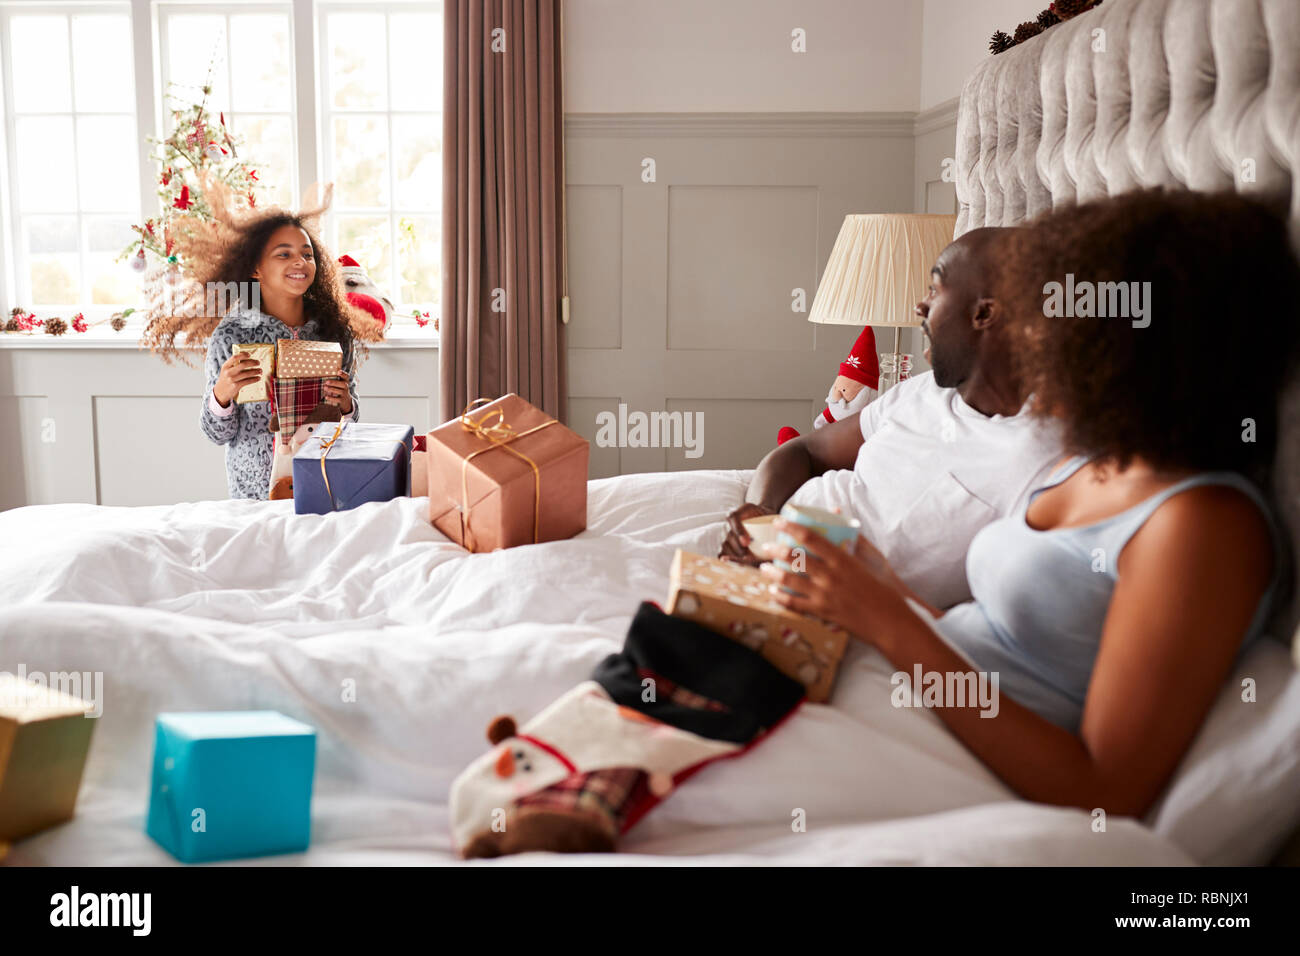 Junge Mädchen, die im Schlafzimmer der Eltern, präsentiert am Weihnachtsmorgen, Eltern im Bett sitzen, Seitenansicht Stockfoto